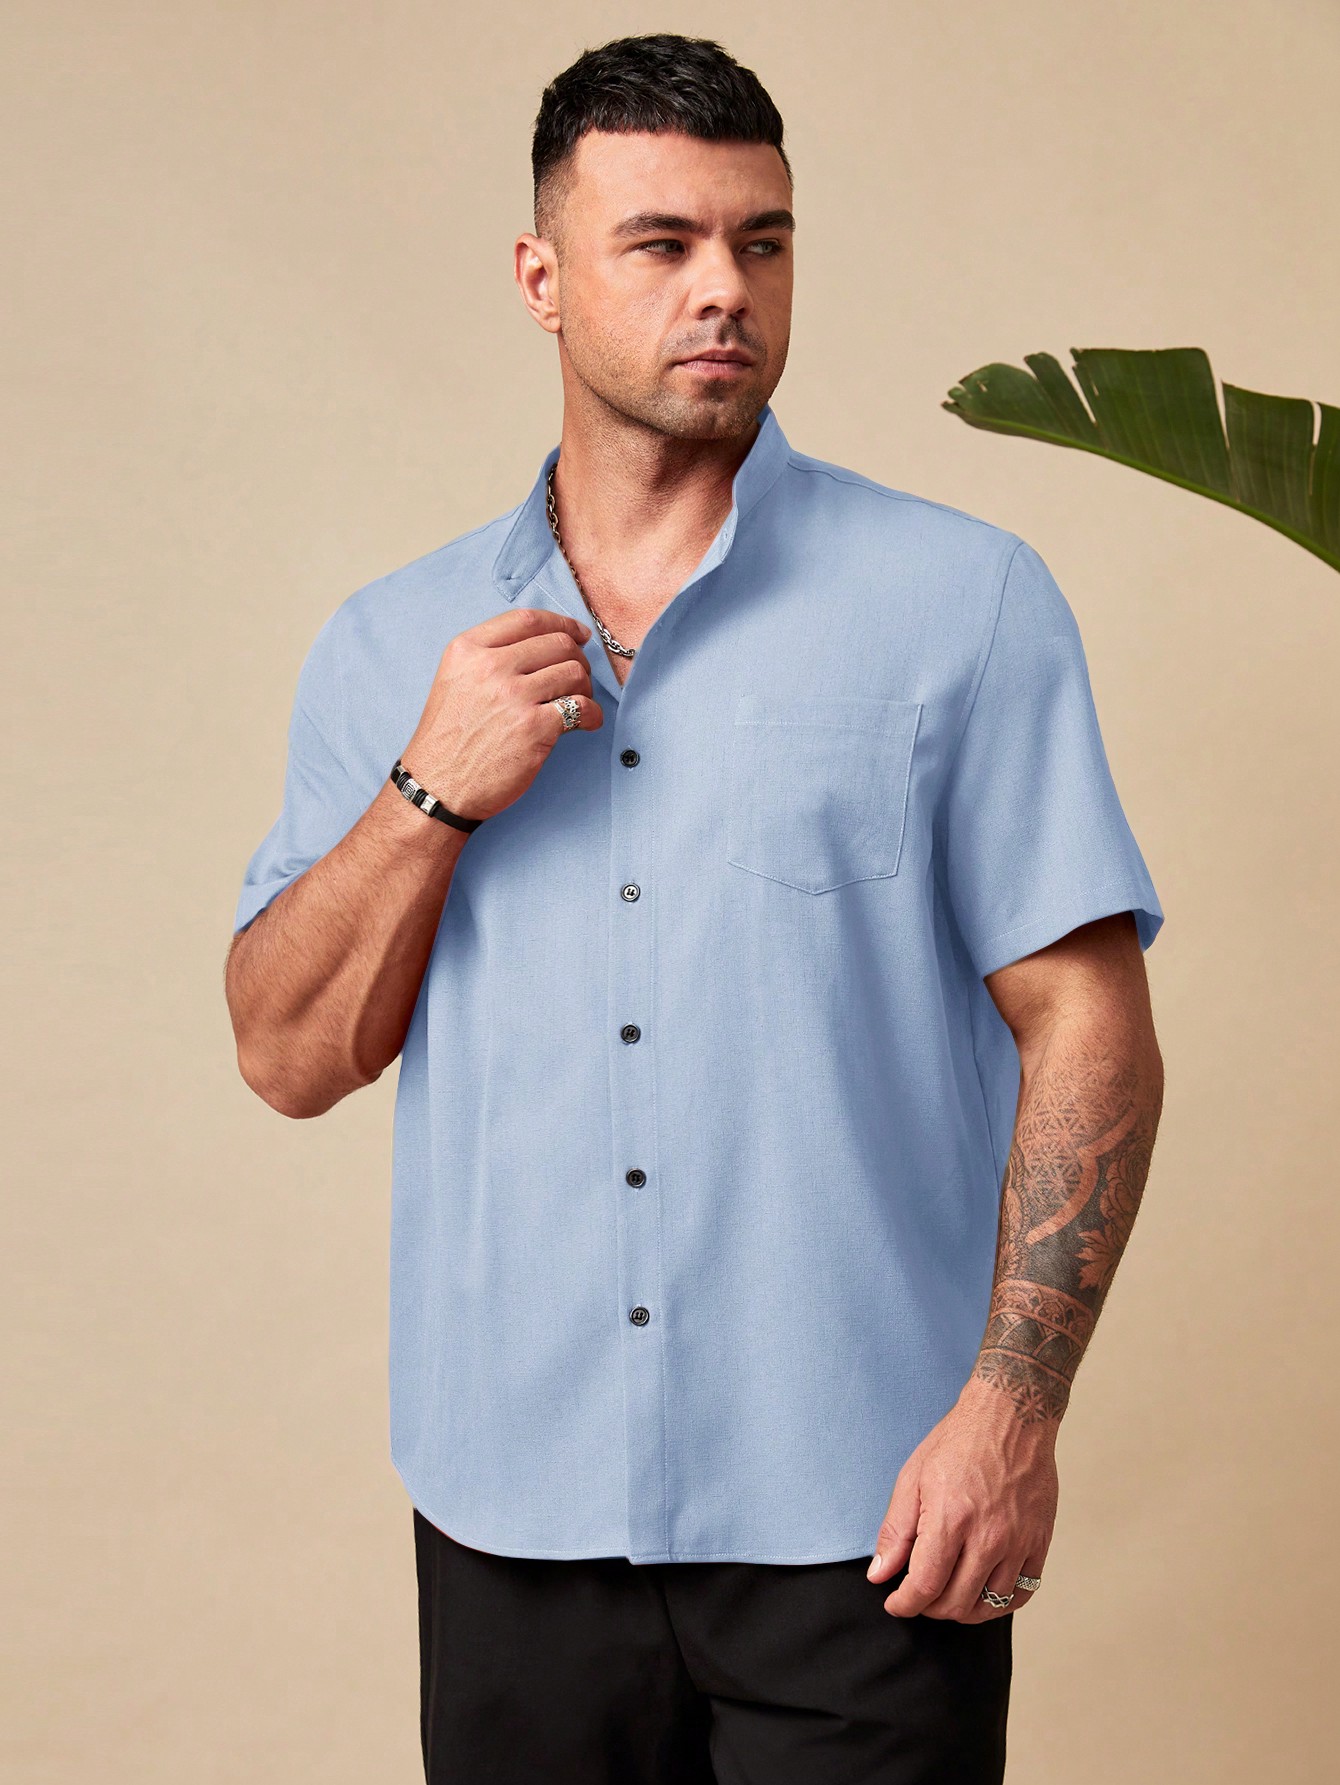 Manfinity Homme Мужская рубашка свободного кроя больших размеров на пуговицах с короткими рукавами и накладными карманами больших размеров, голубые